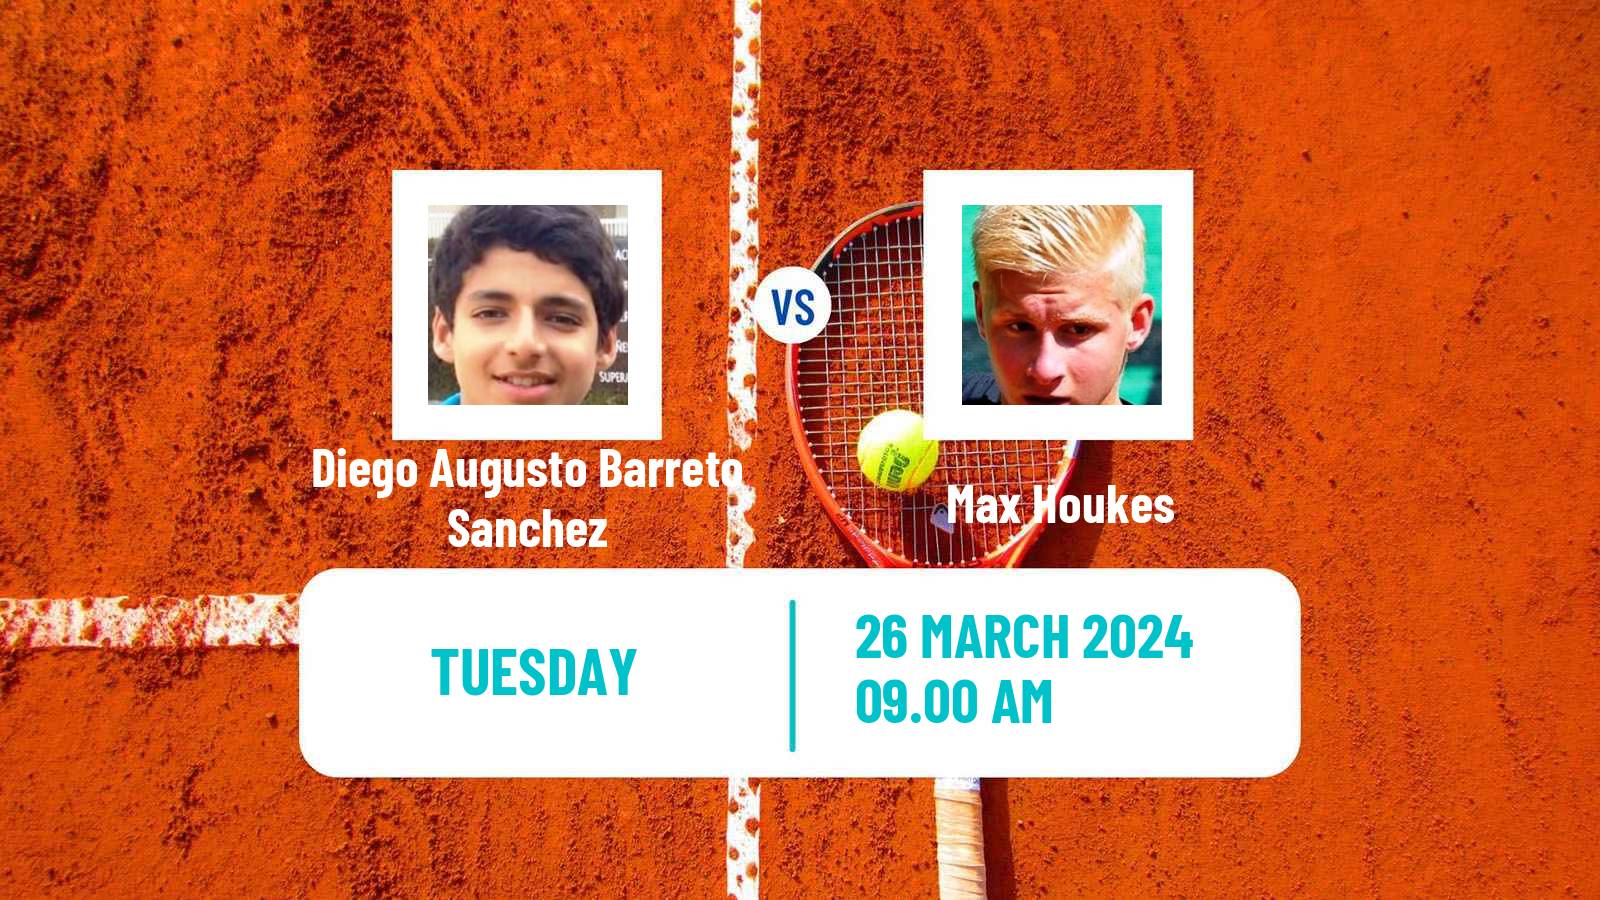 Tennis ITF M25 Santa Margherita Di Pula Men Diego Augusto Barreto Sanchez - Max Houkes